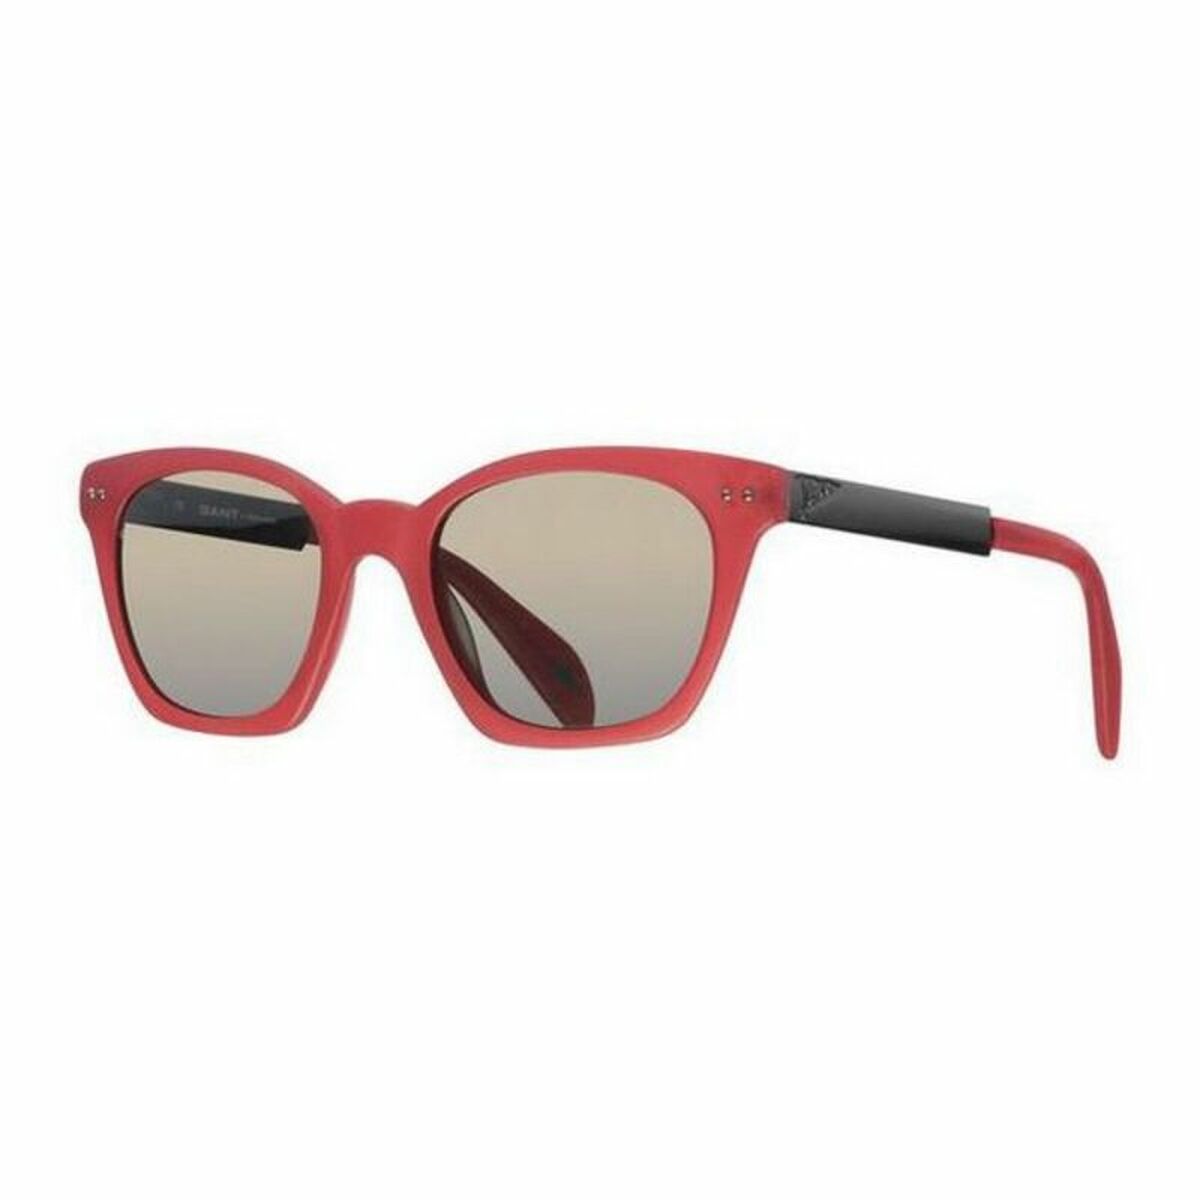 Men's Sunglasses Gant MB MATT RD-100G